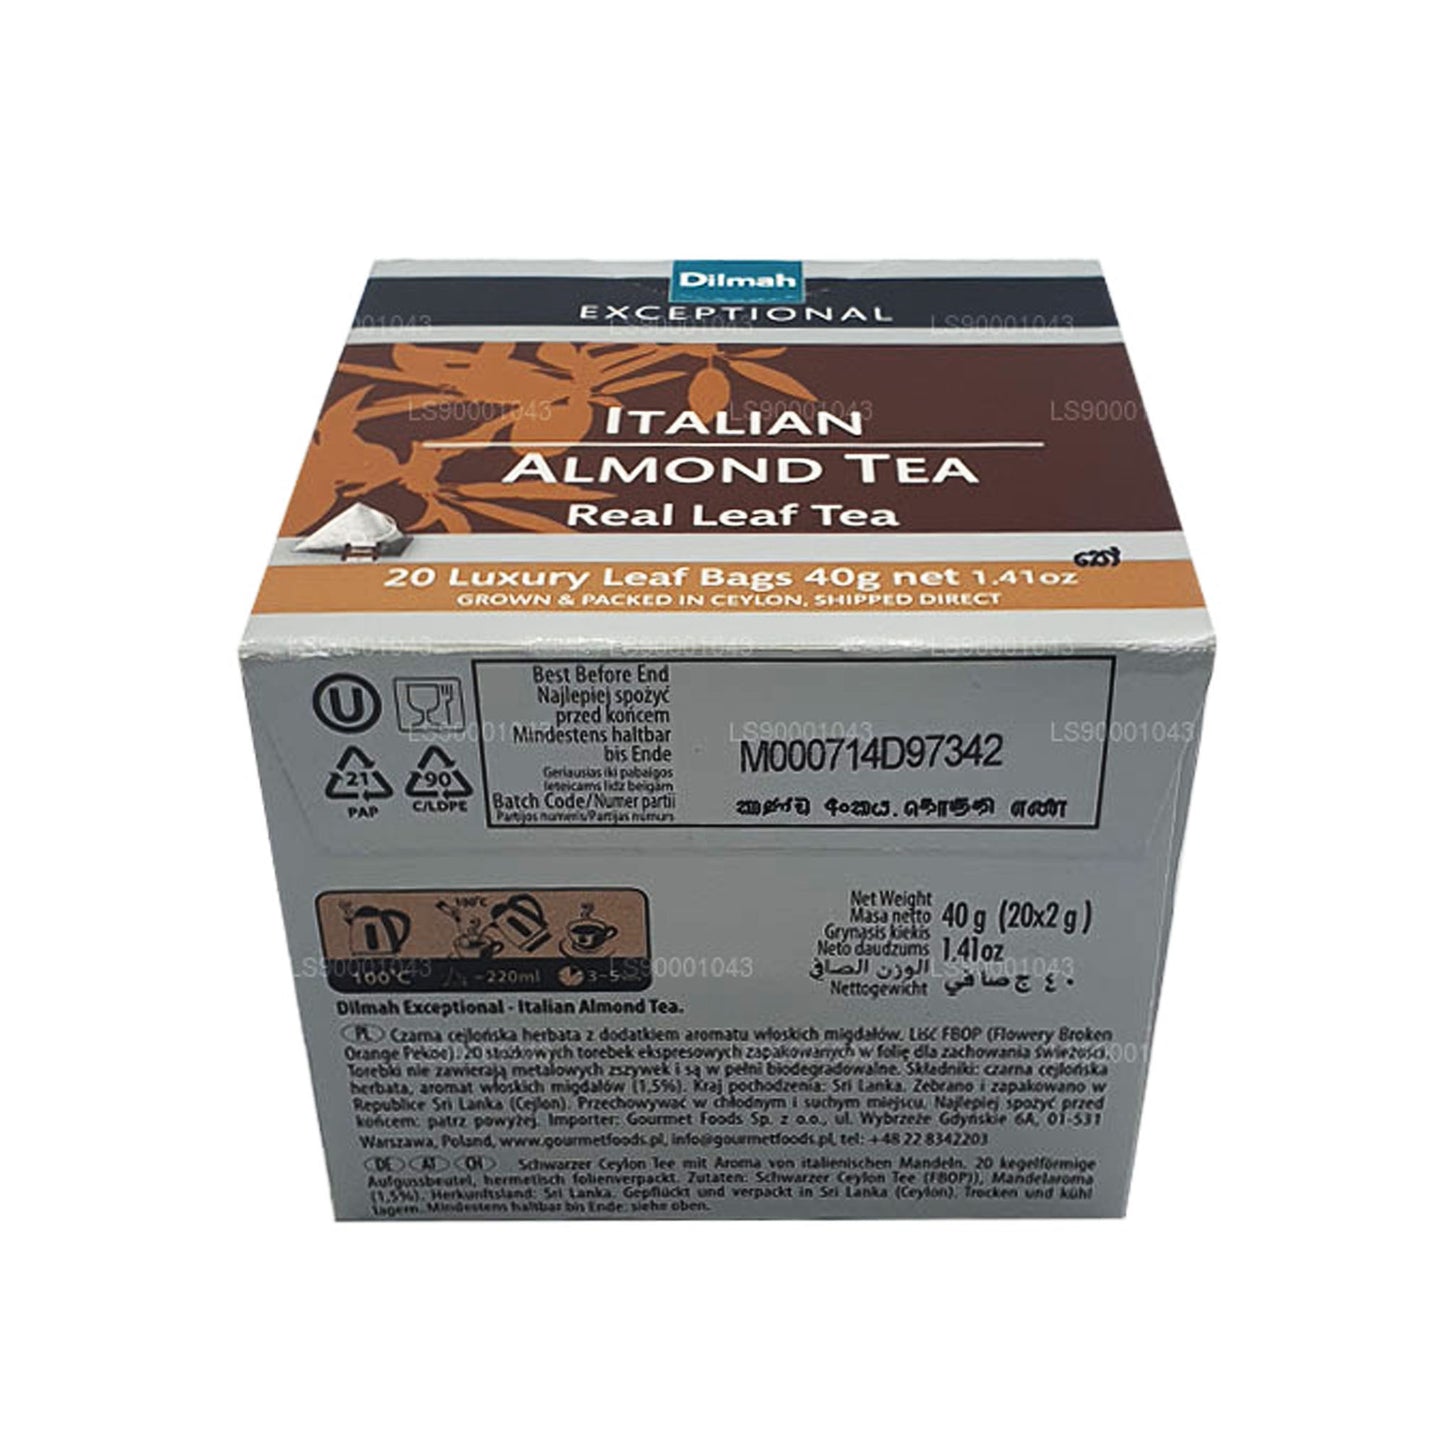 Dilmah Exceptional Italian Almond Real Leaf Tea (40 g) 20 Teebeutel